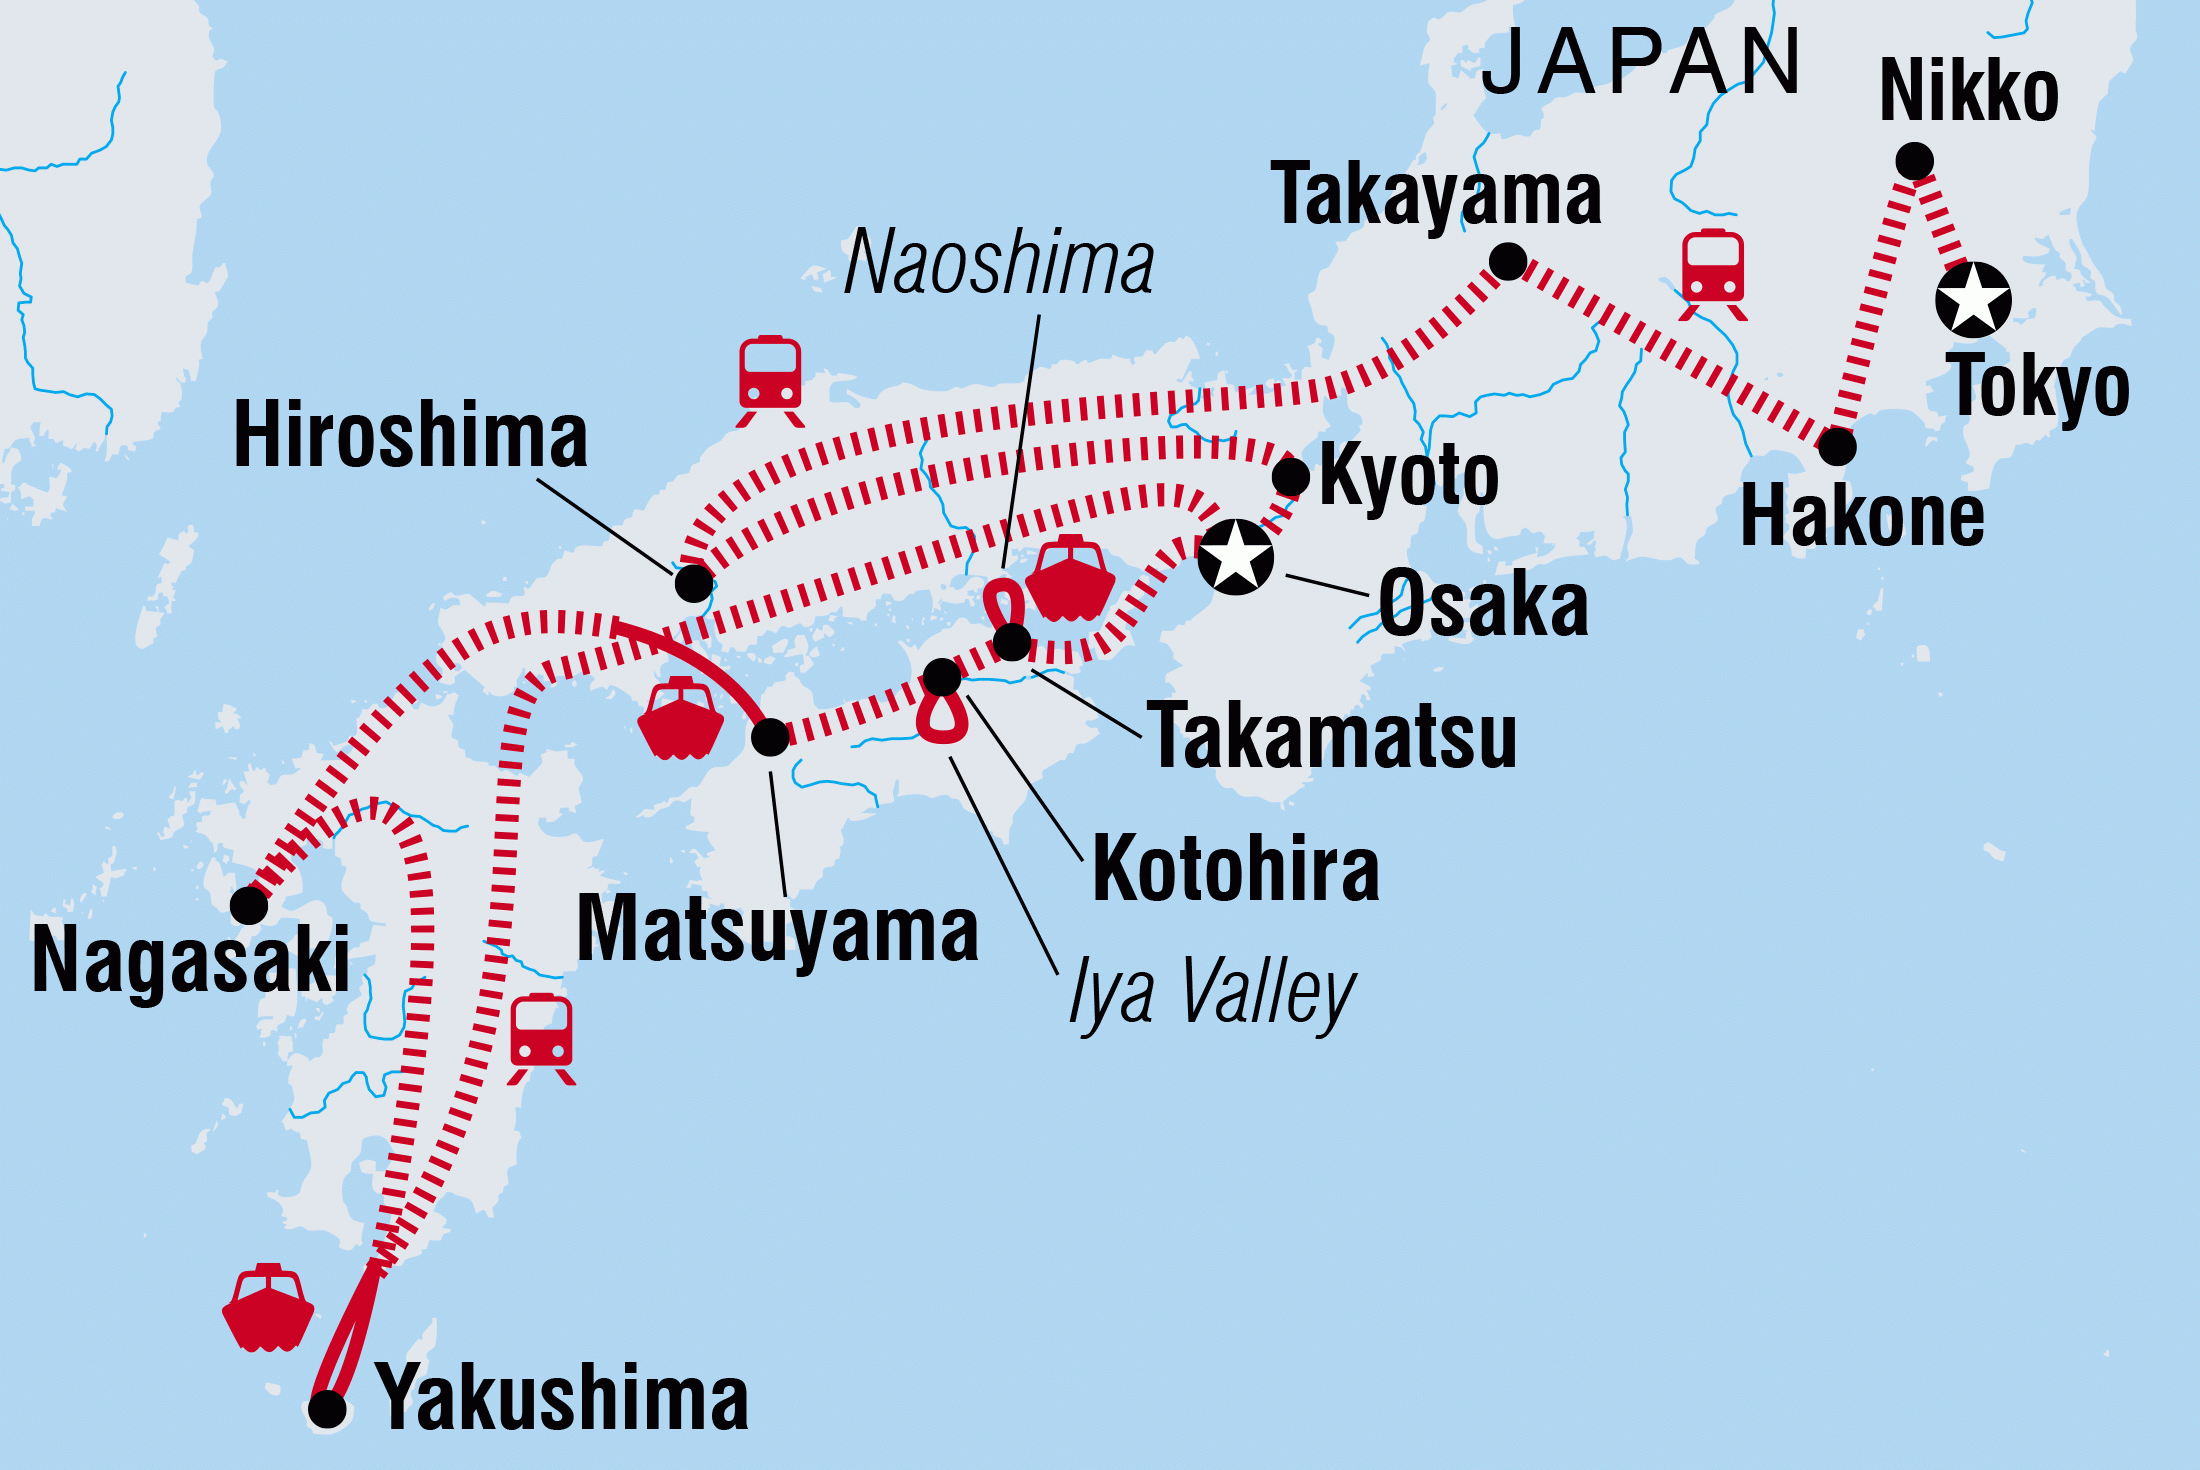 Nikko Japan Map